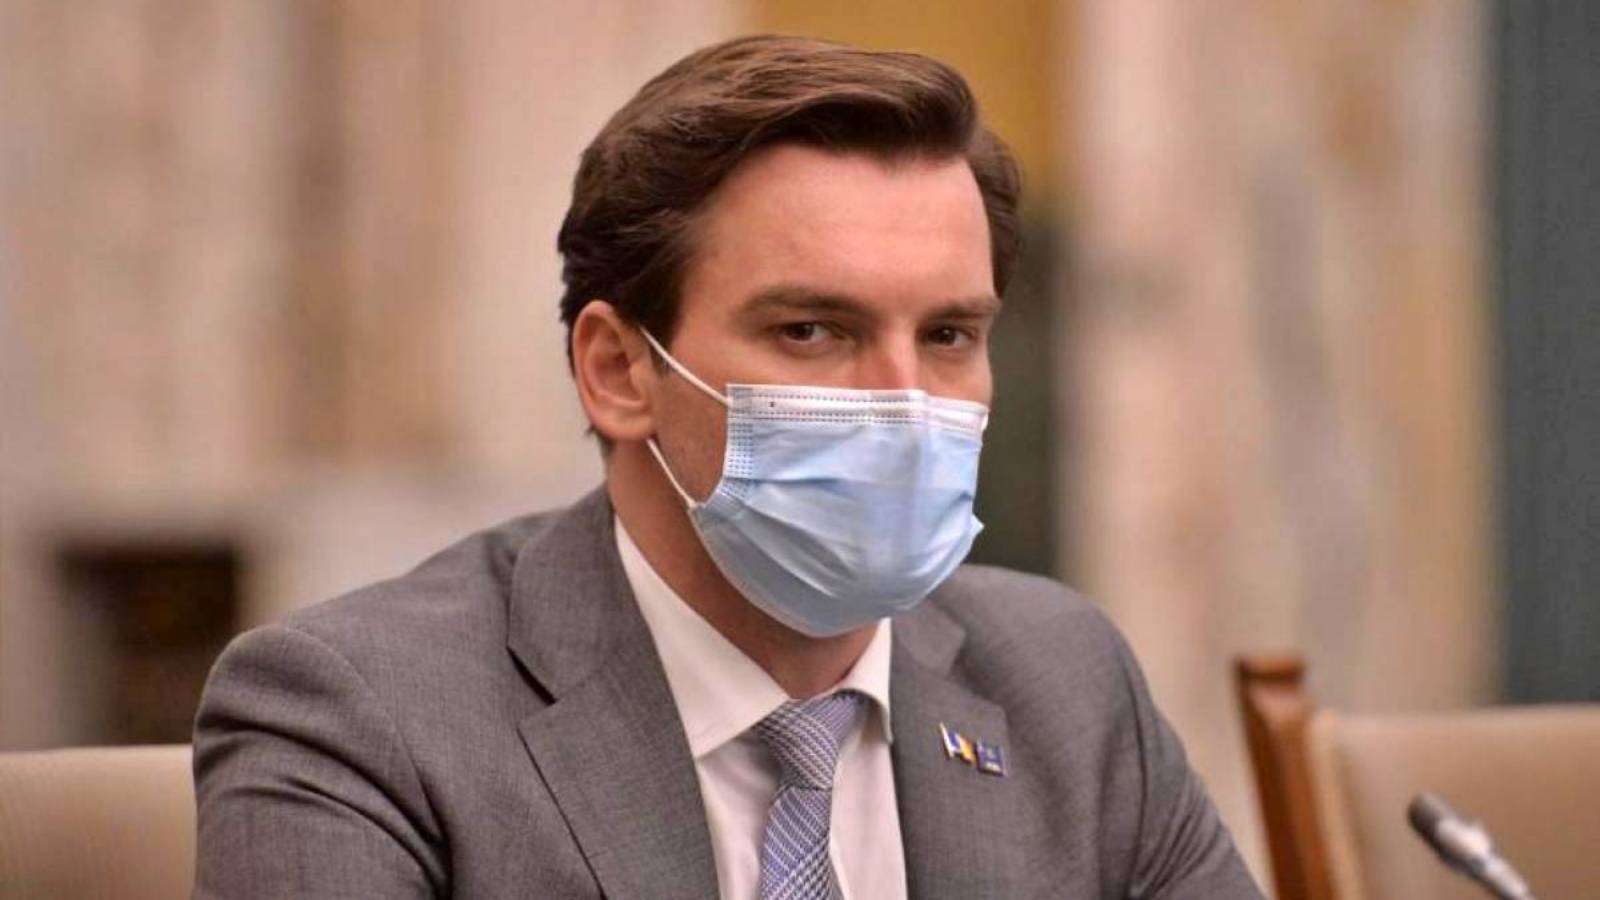 Andrei Baciu Anuntul Important Valul 6 Coronavirus pregatirile Ministerului Sanatatii